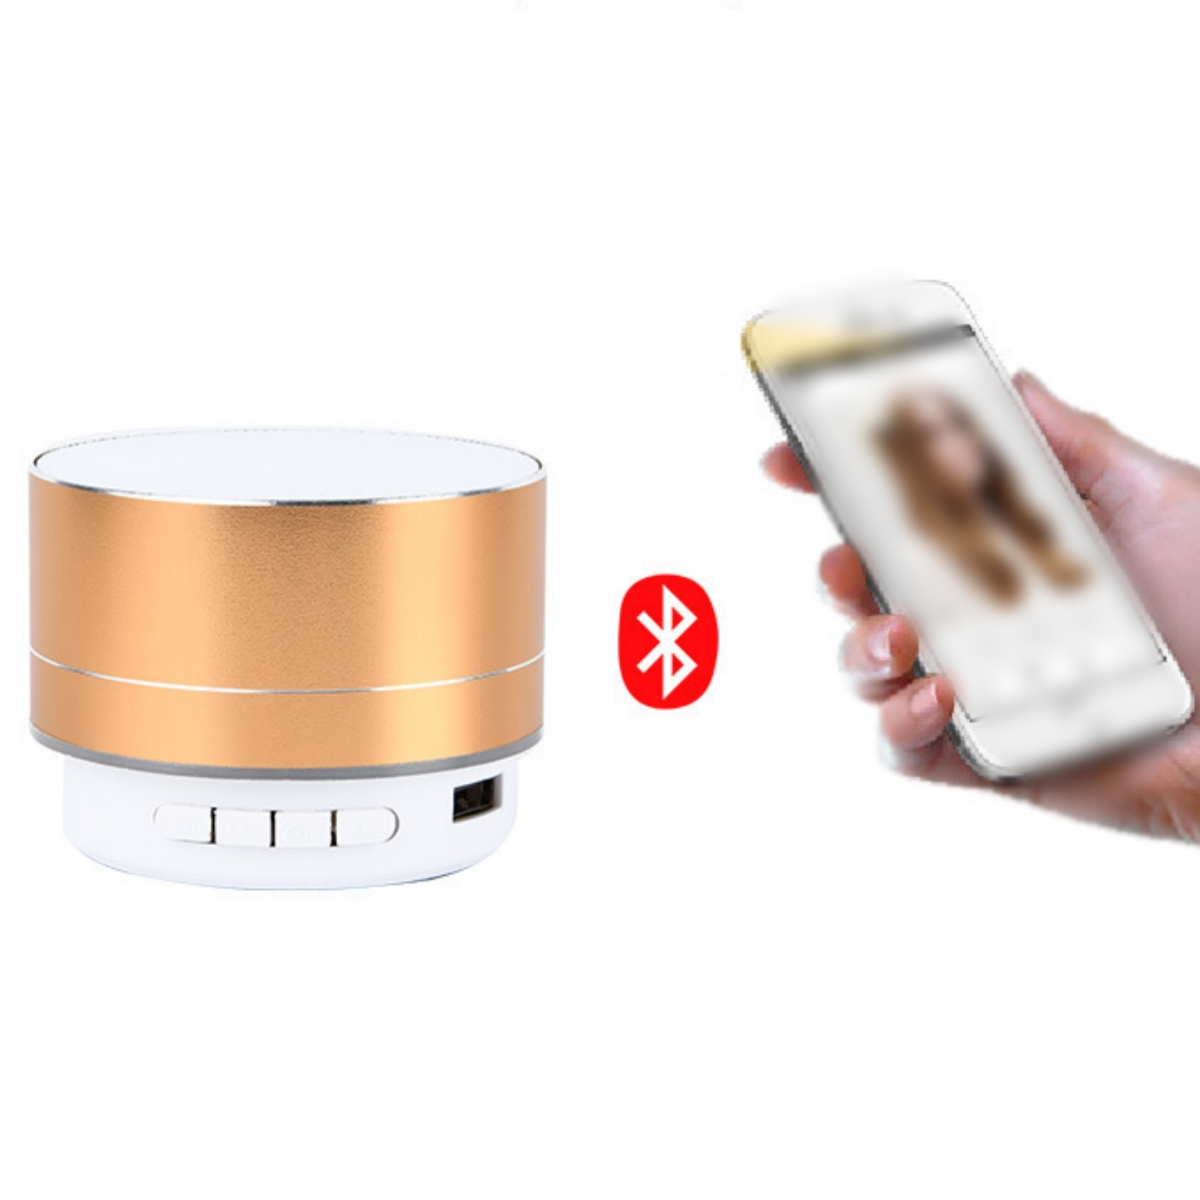 SHAOKE Bluetooth-Lautsprecher - Kompakt Hochwertig Rosa Bluetooth Lautsprecher, Surround-Sound Tragbar 360°